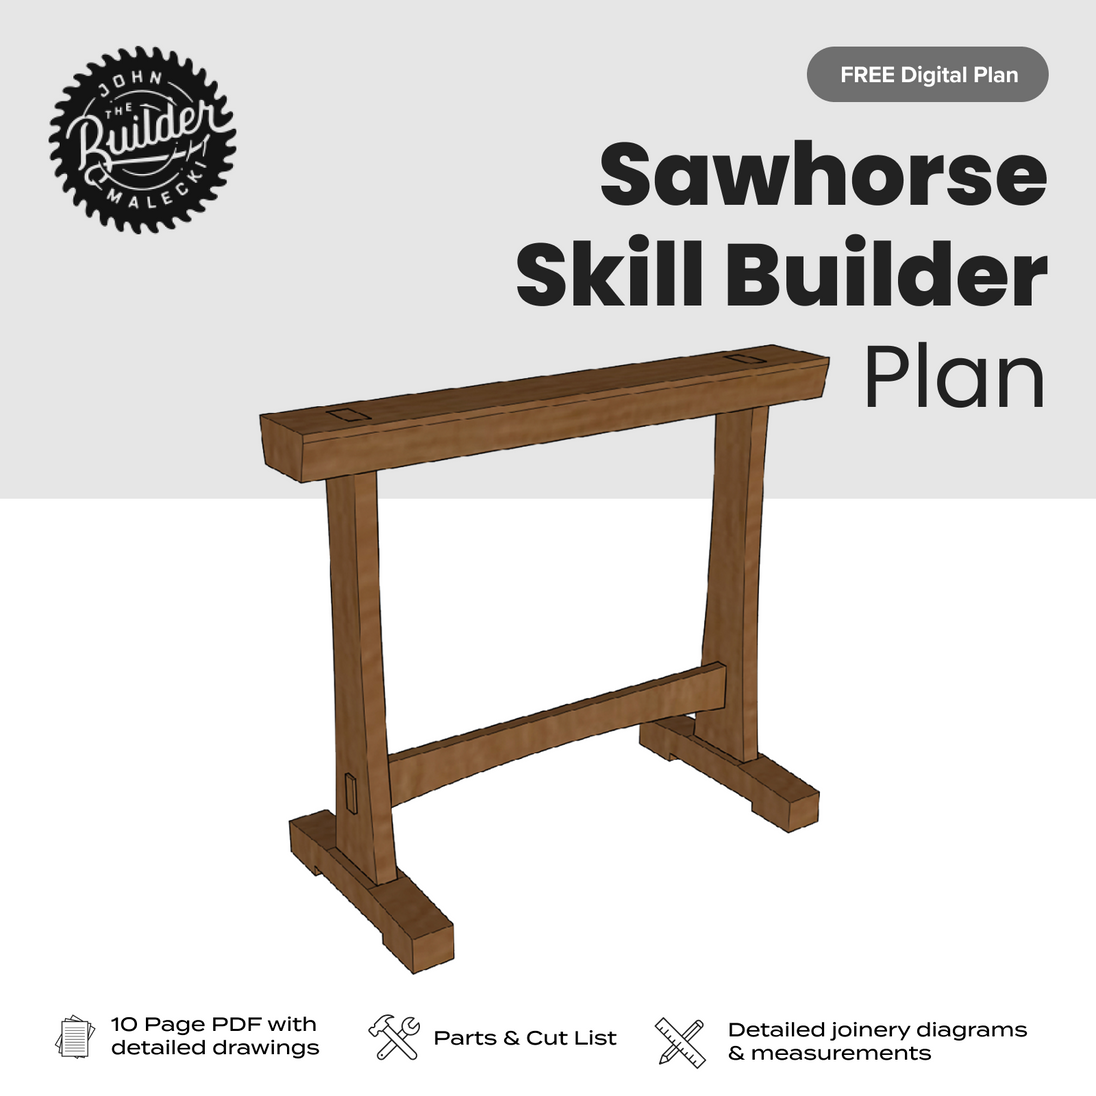 FREE Sawhorse Skill Builder Plan - John Malecki Store